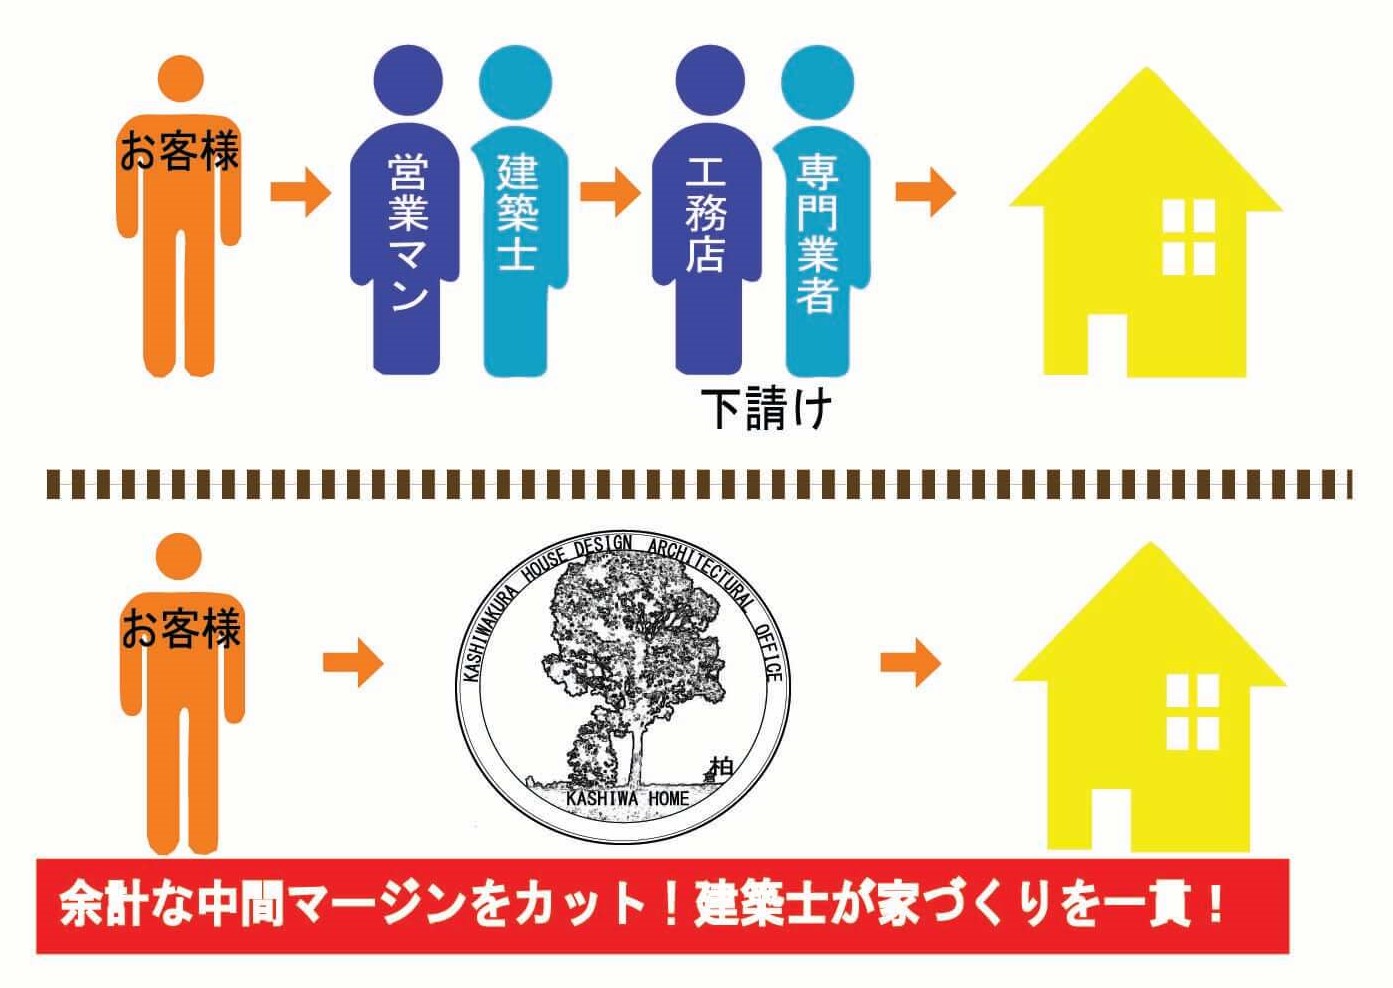 KASHIWA HOME特有の一貫管理体制